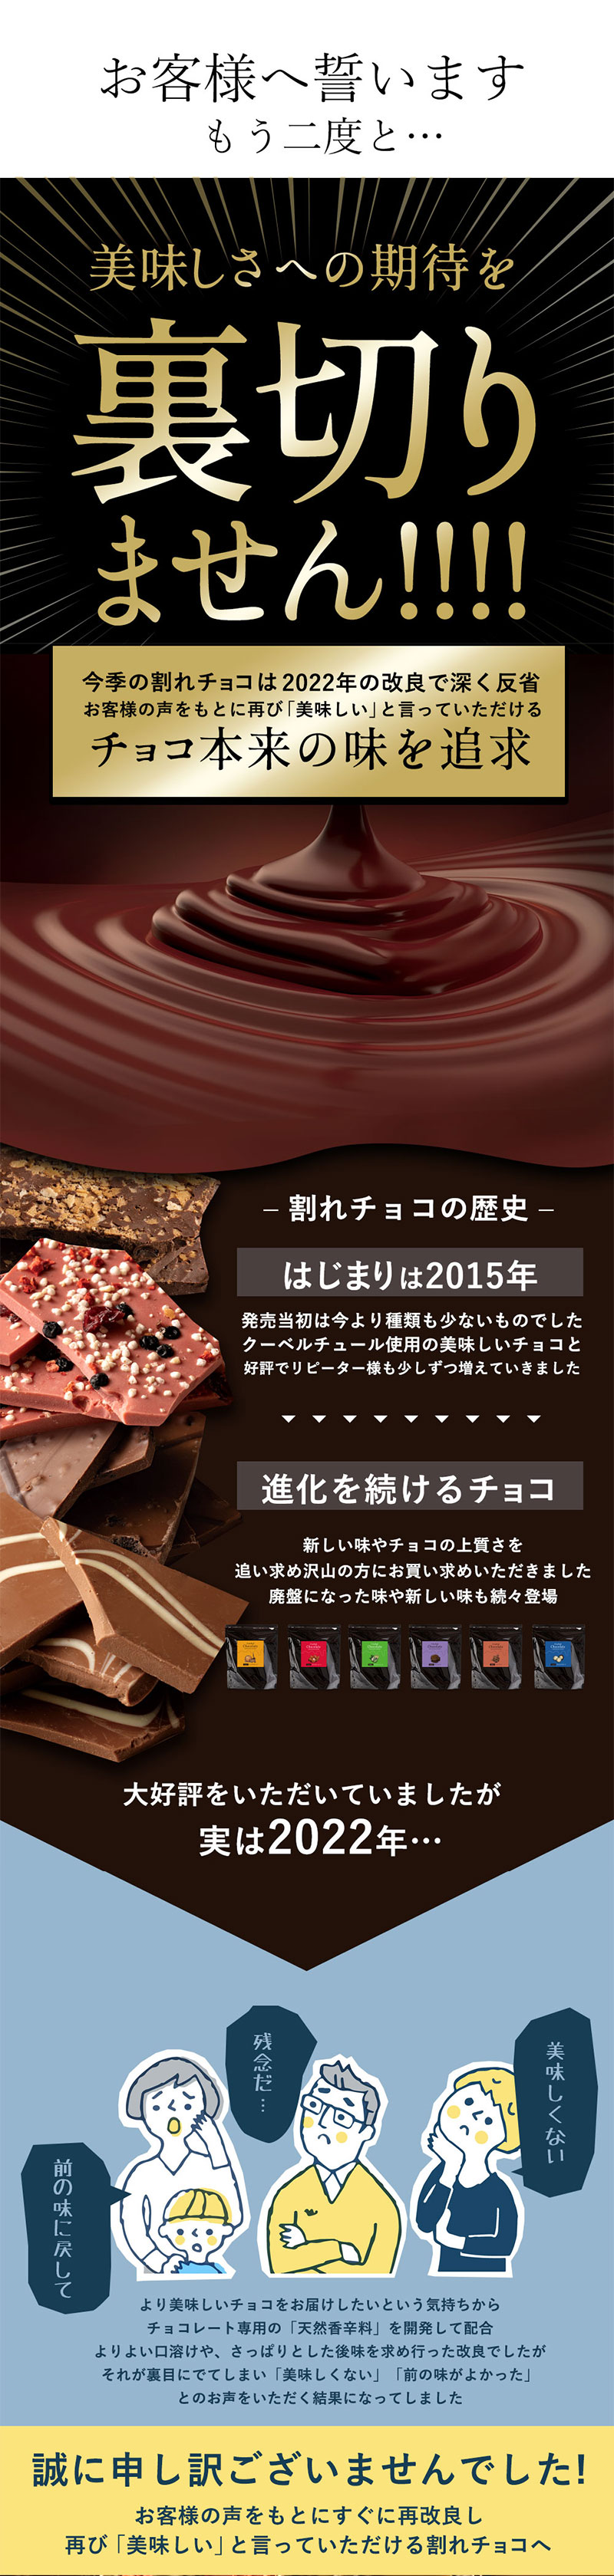 チョコレート 割れチョコ 37種類から選べる 本格クーベルチュール使用